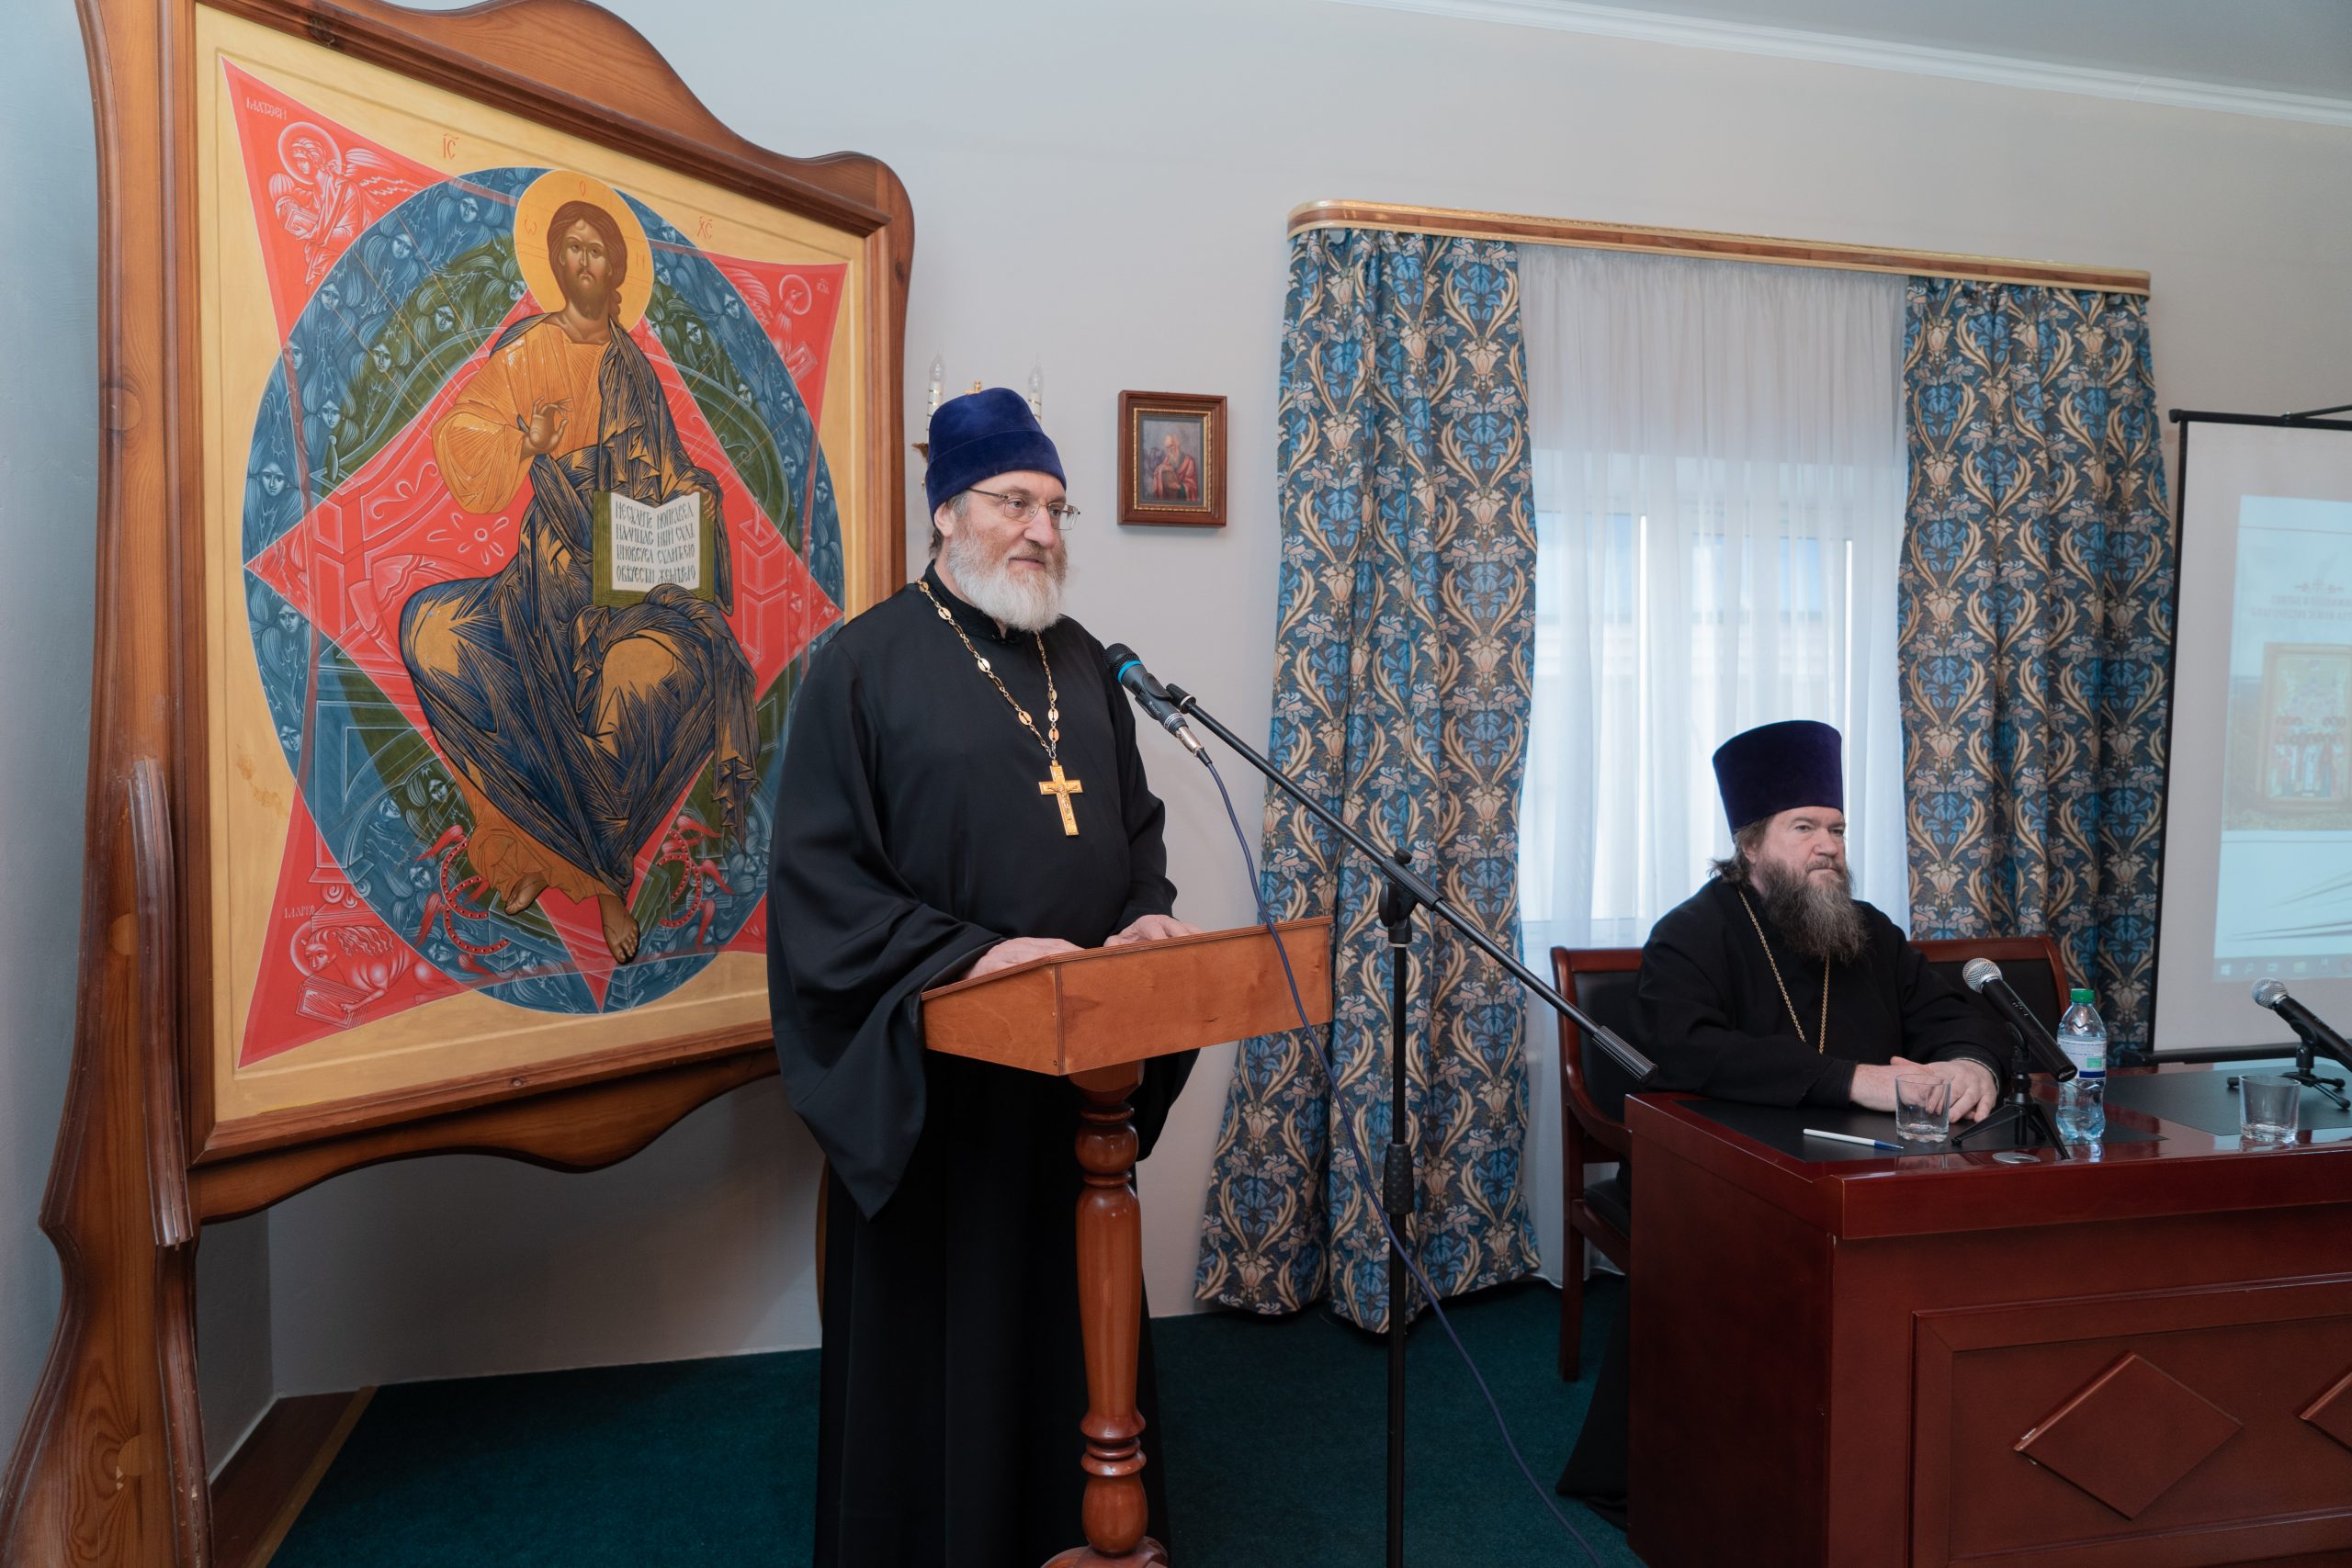 2 ноября в Барнаульской духовной семинарии состоялась презентация электронного издания, посвященного алтайским святым и подвижникам.